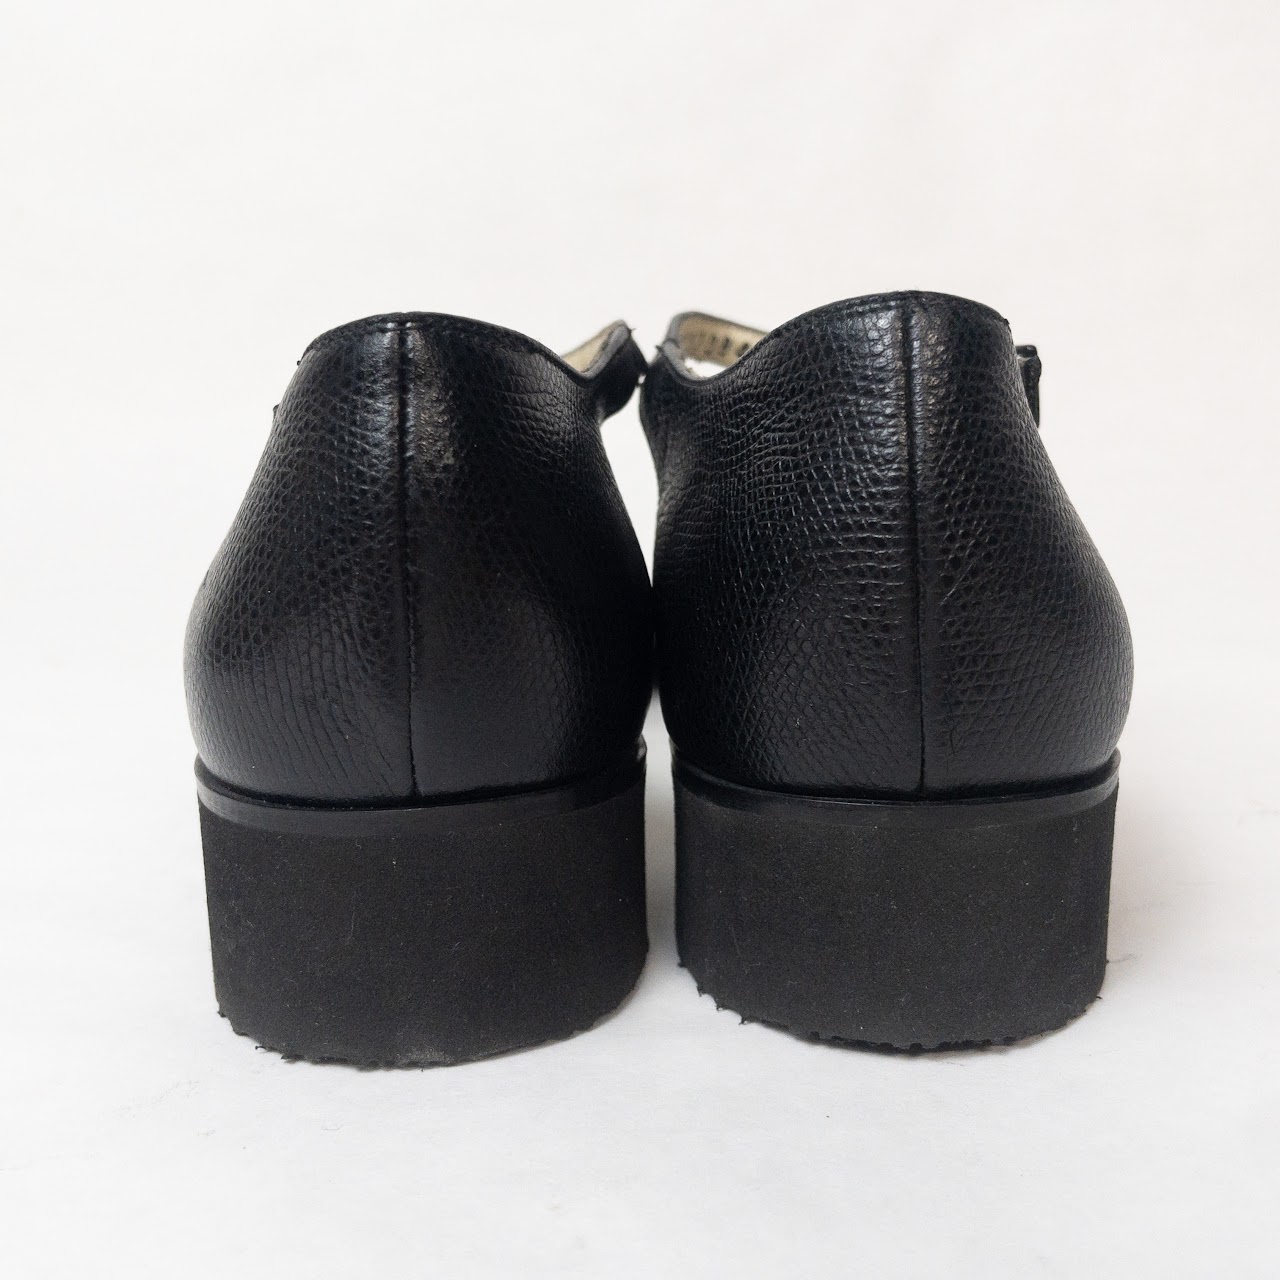 Salvatore Ferragamo Leather Sandals